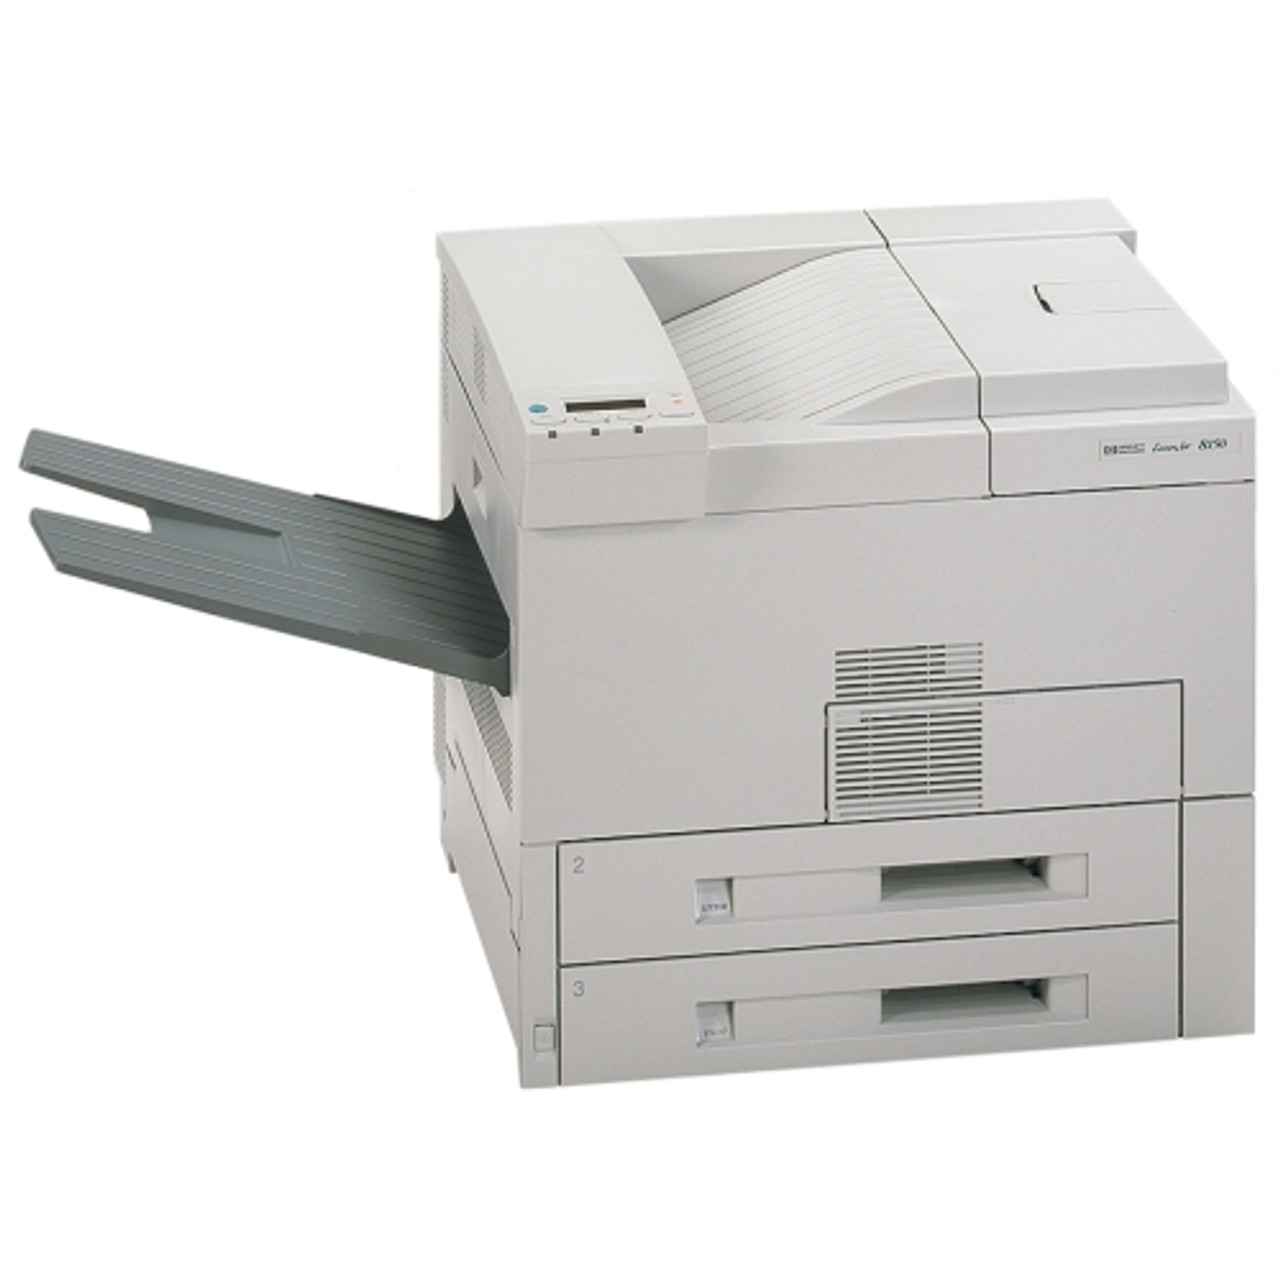 LaserJet 8150 Multifunction Printer series